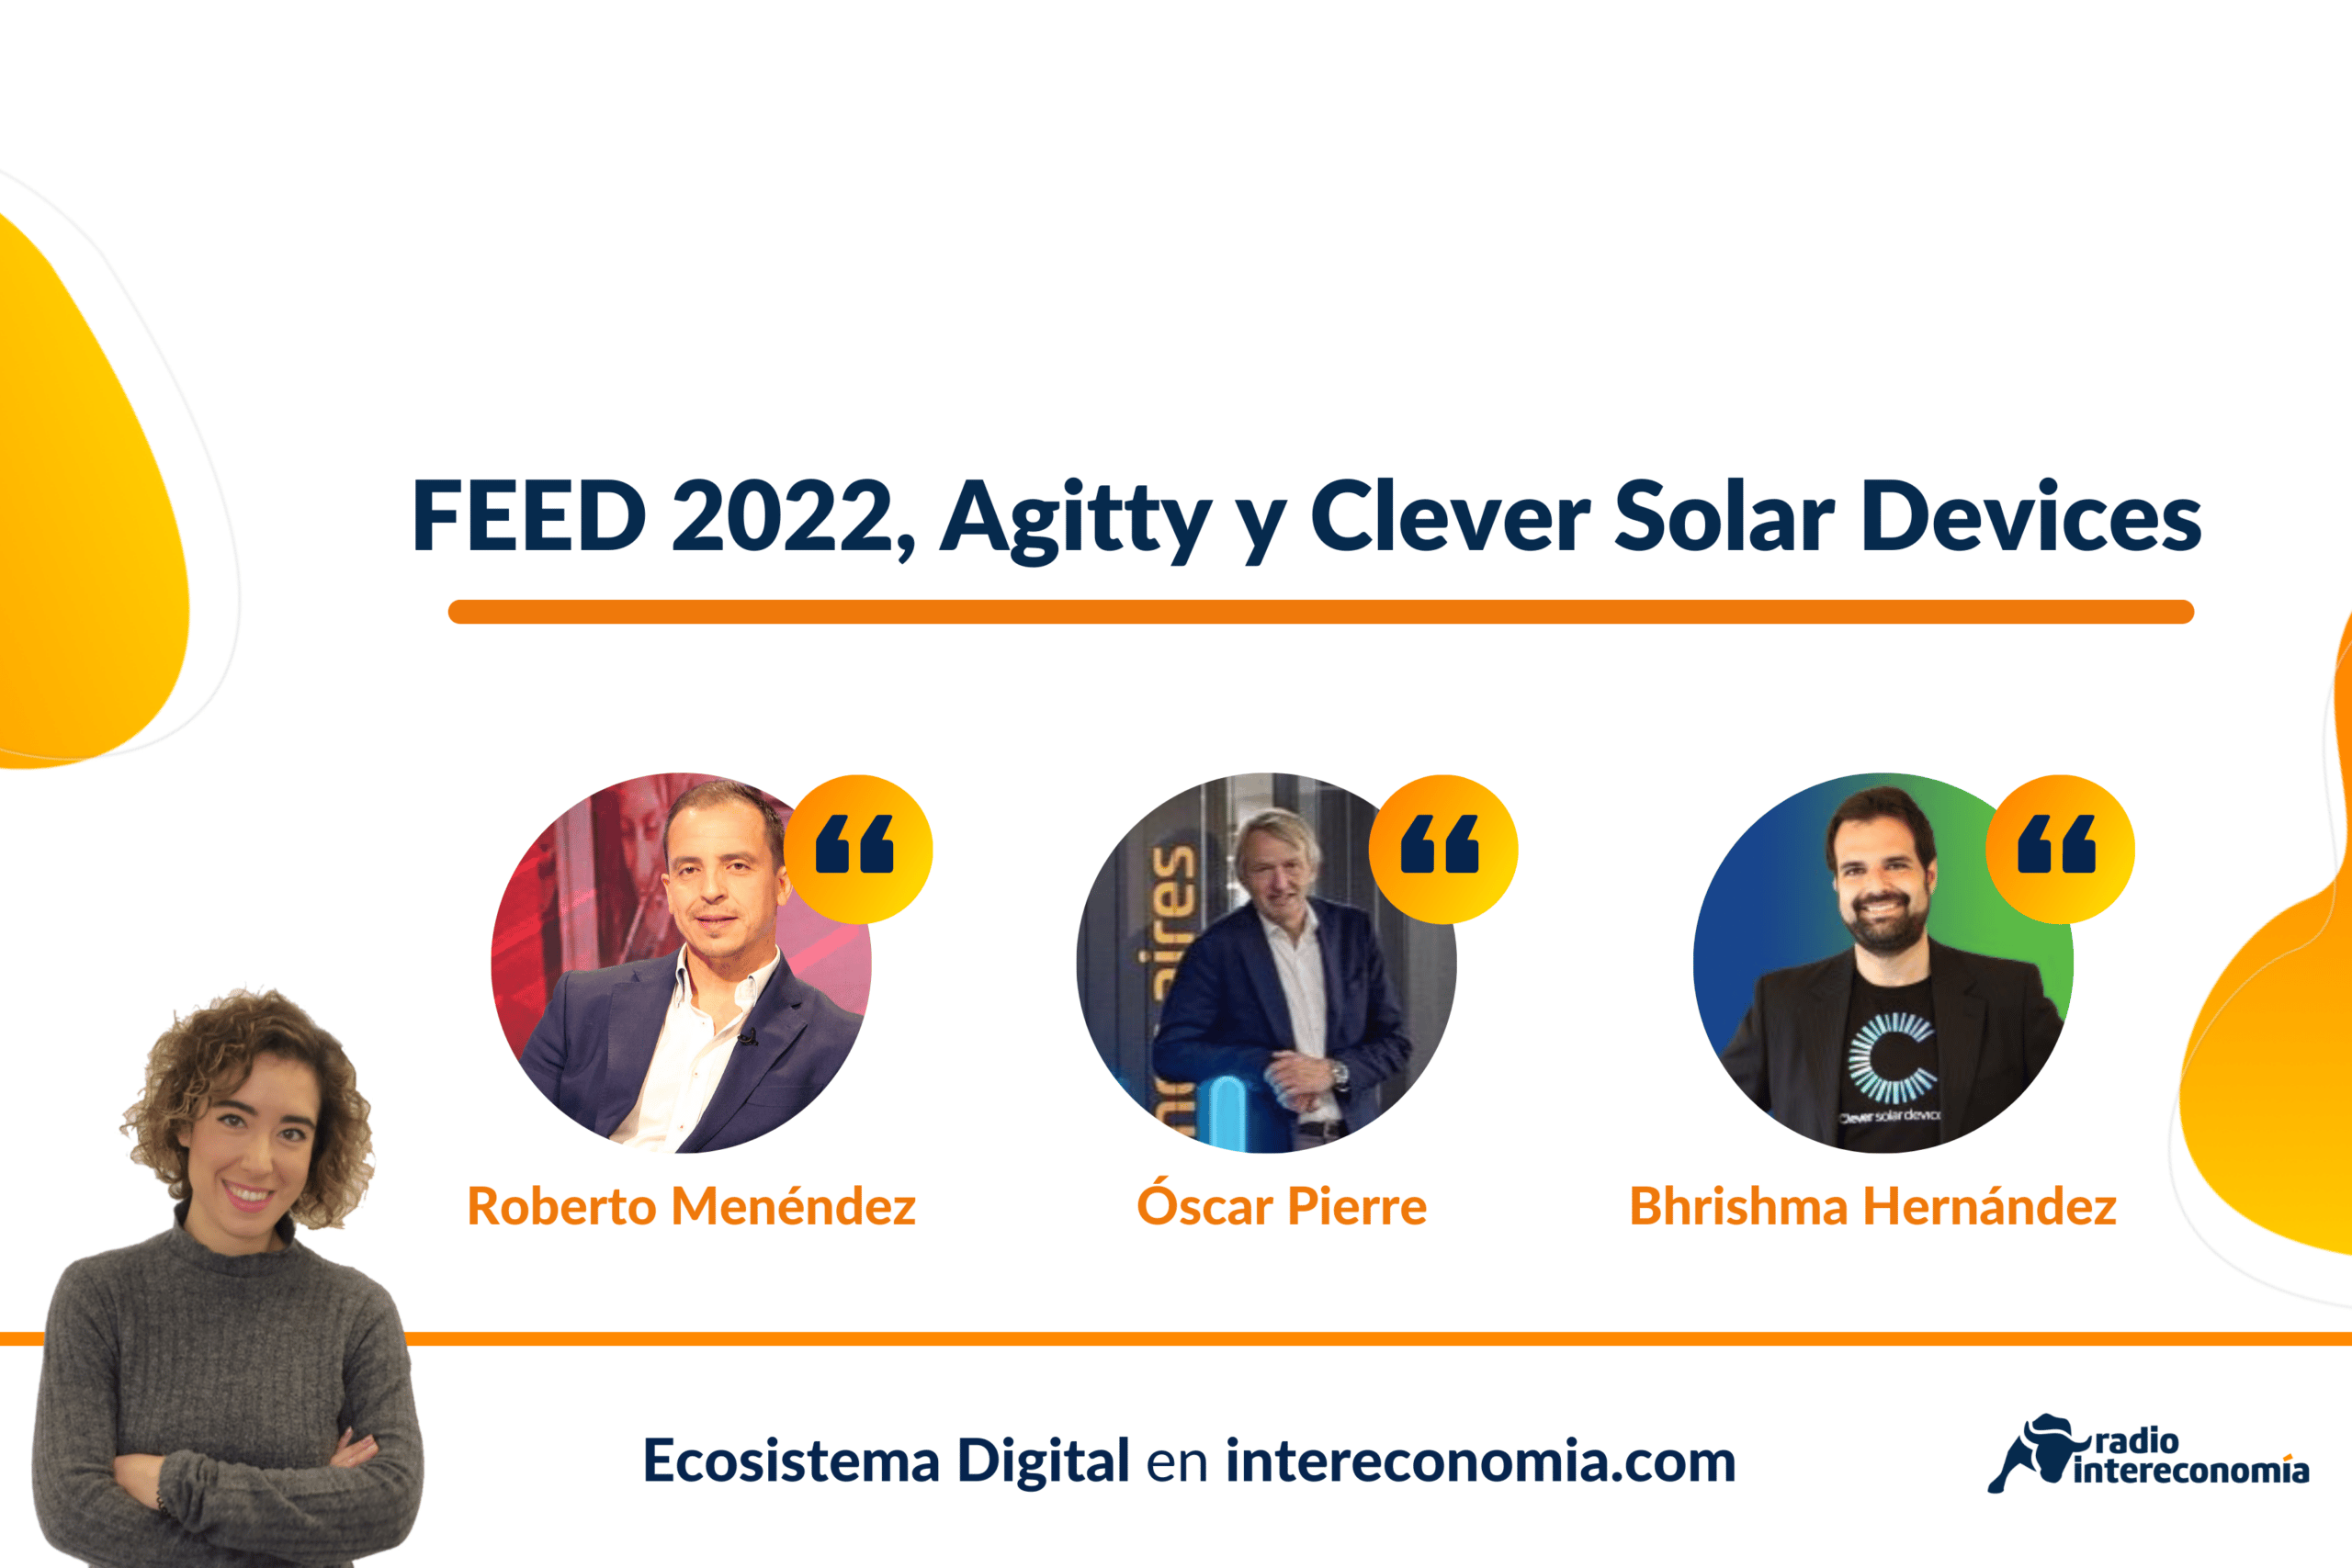 Ecosistema Digital: FEED 2022, Agitty y Clever Solar Devices 22/04/2022